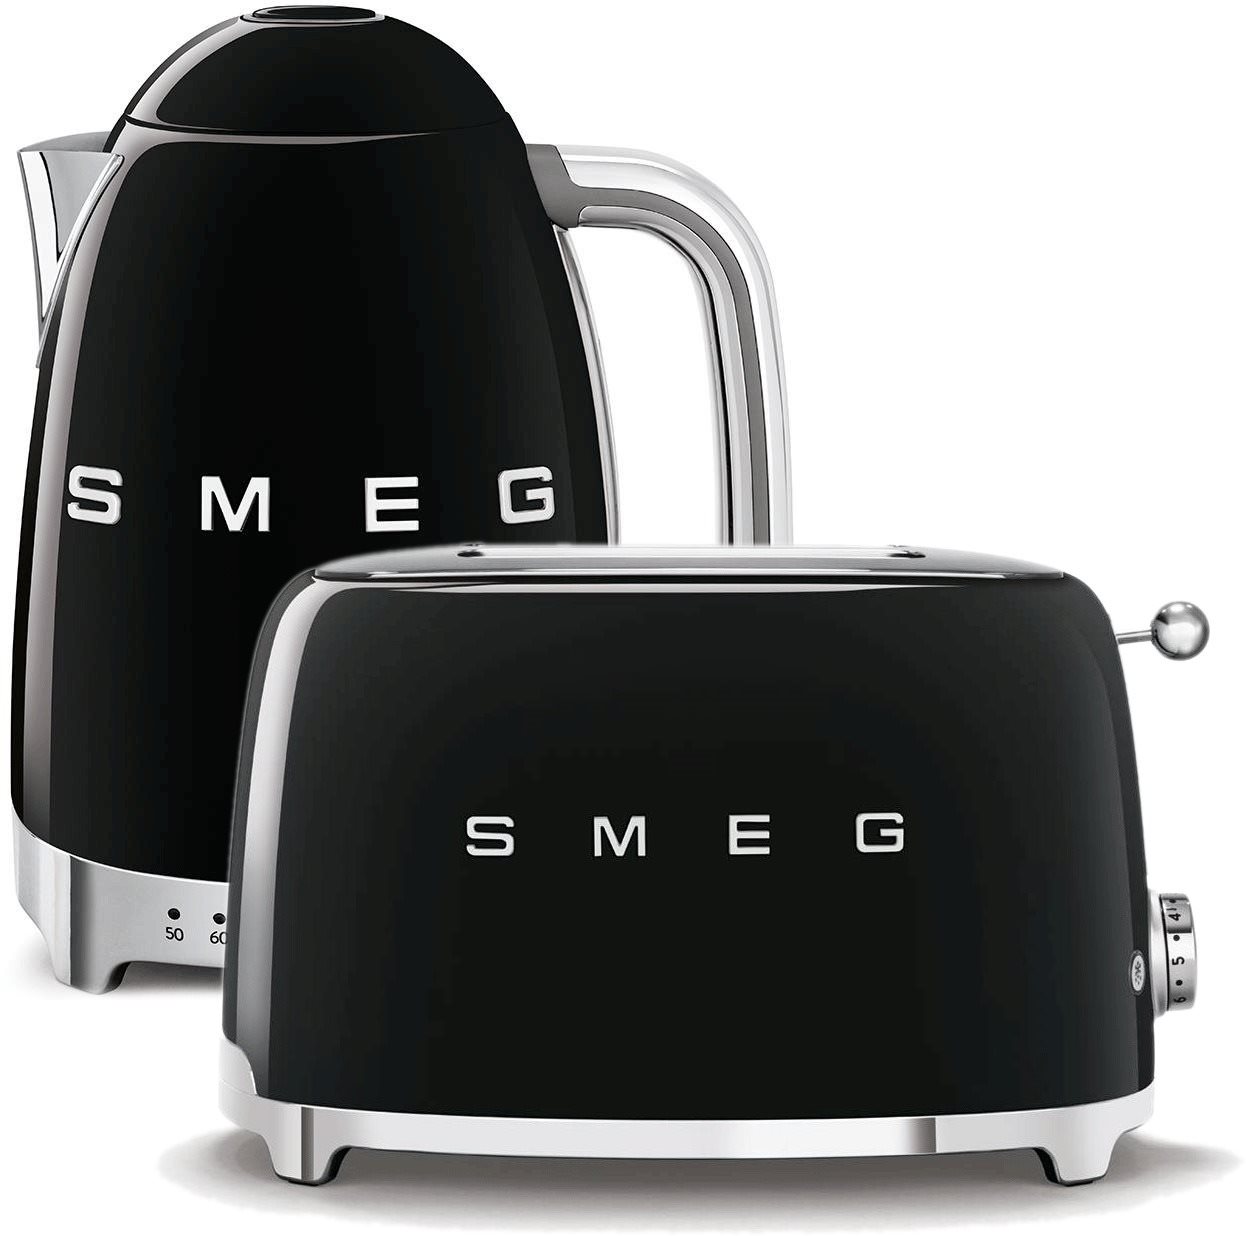 rychlovarná konvice SMEG 50's Retro Style 1,7l LED indikátor černá + topinkovač SMEG 50's Retro Styl